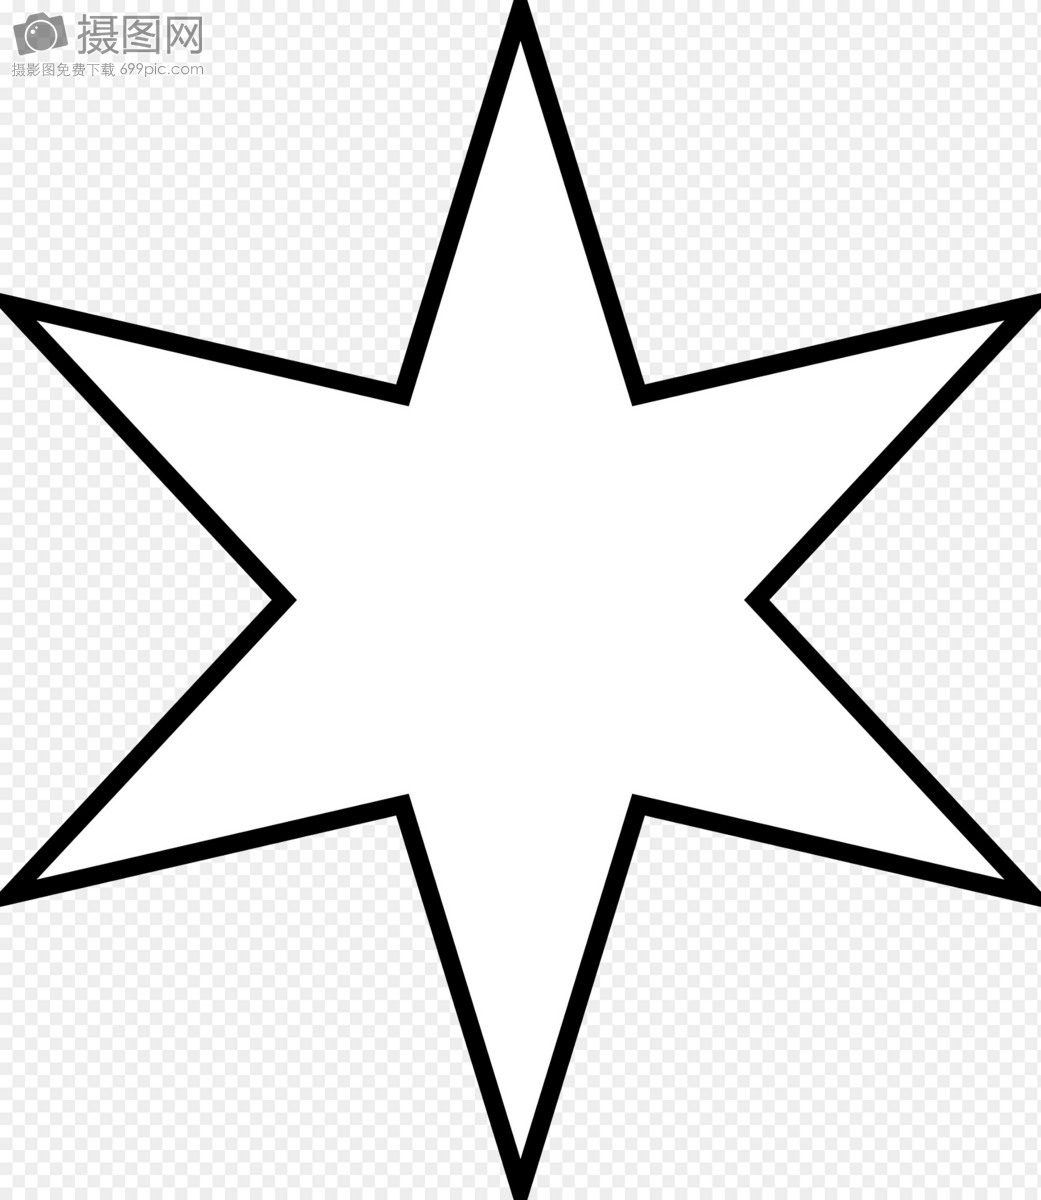 矢量星形圖標, 明星, 圖標, 五角星向量圖案素材免費下載，PNG，EPS和AI素材下載 - Pngtree